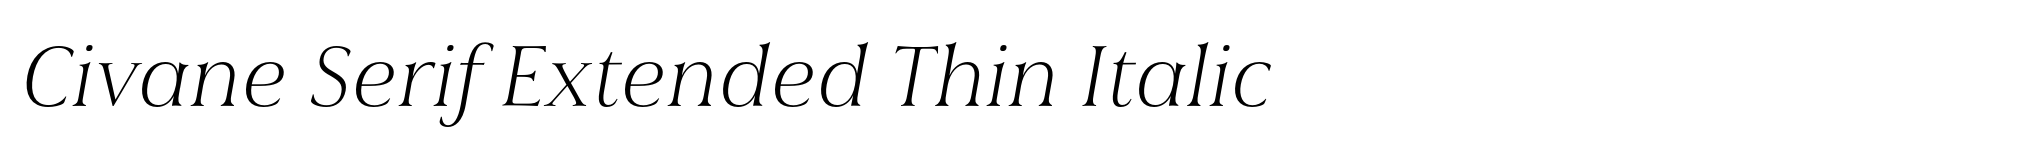 Civane Serif Extended Thin Italic image